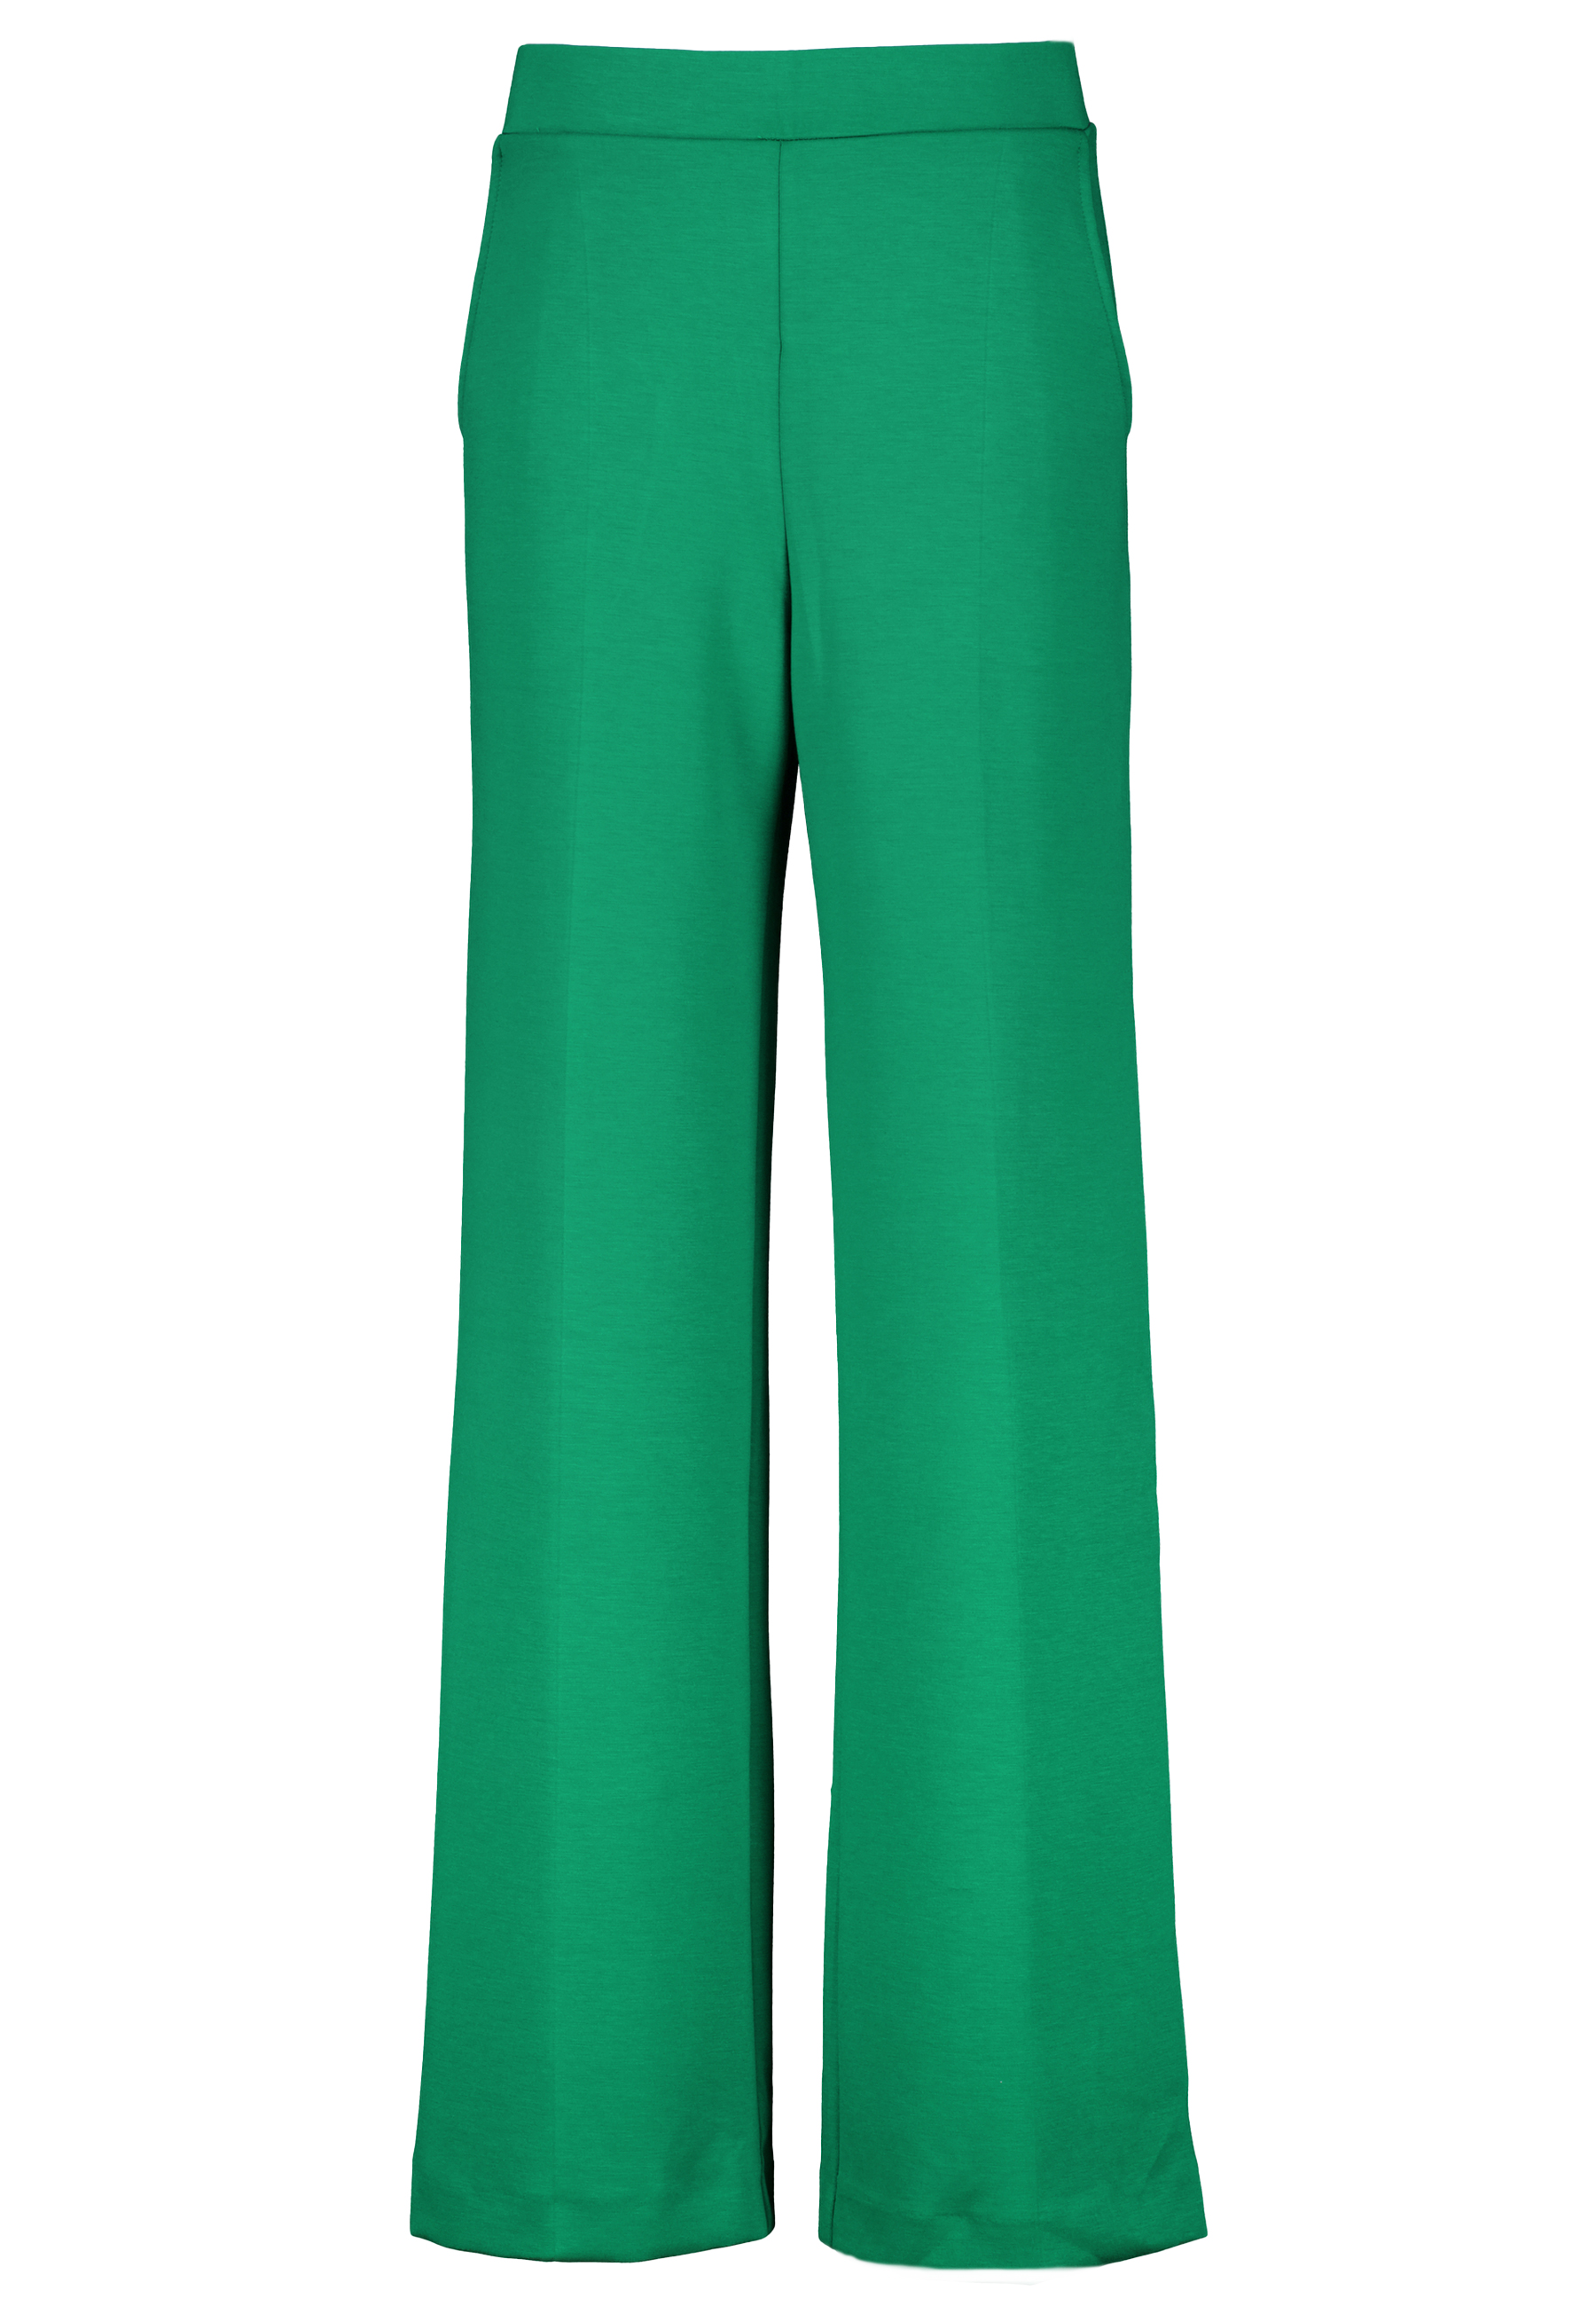 Ana Alcazar pantalons groen Dames maat 42